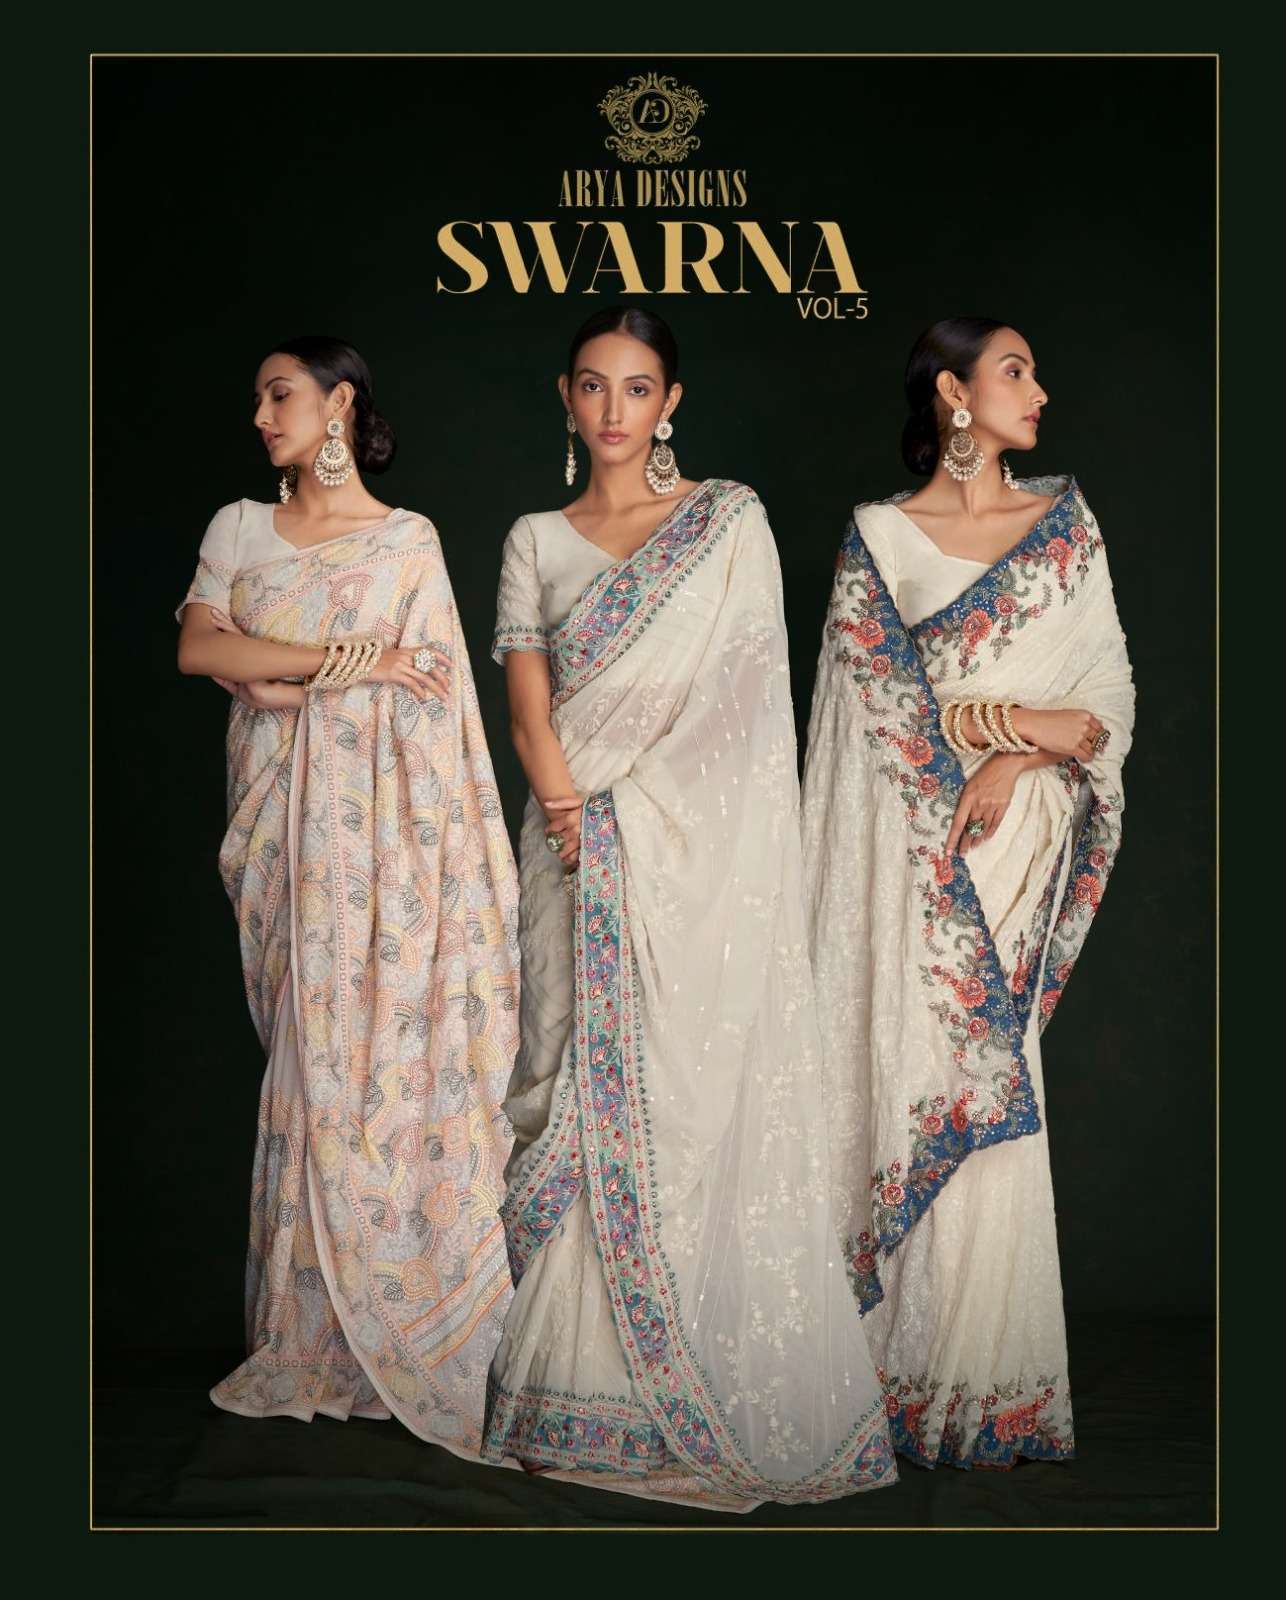 arya designs swarna vol 5 series 46001-46005 georgette saree